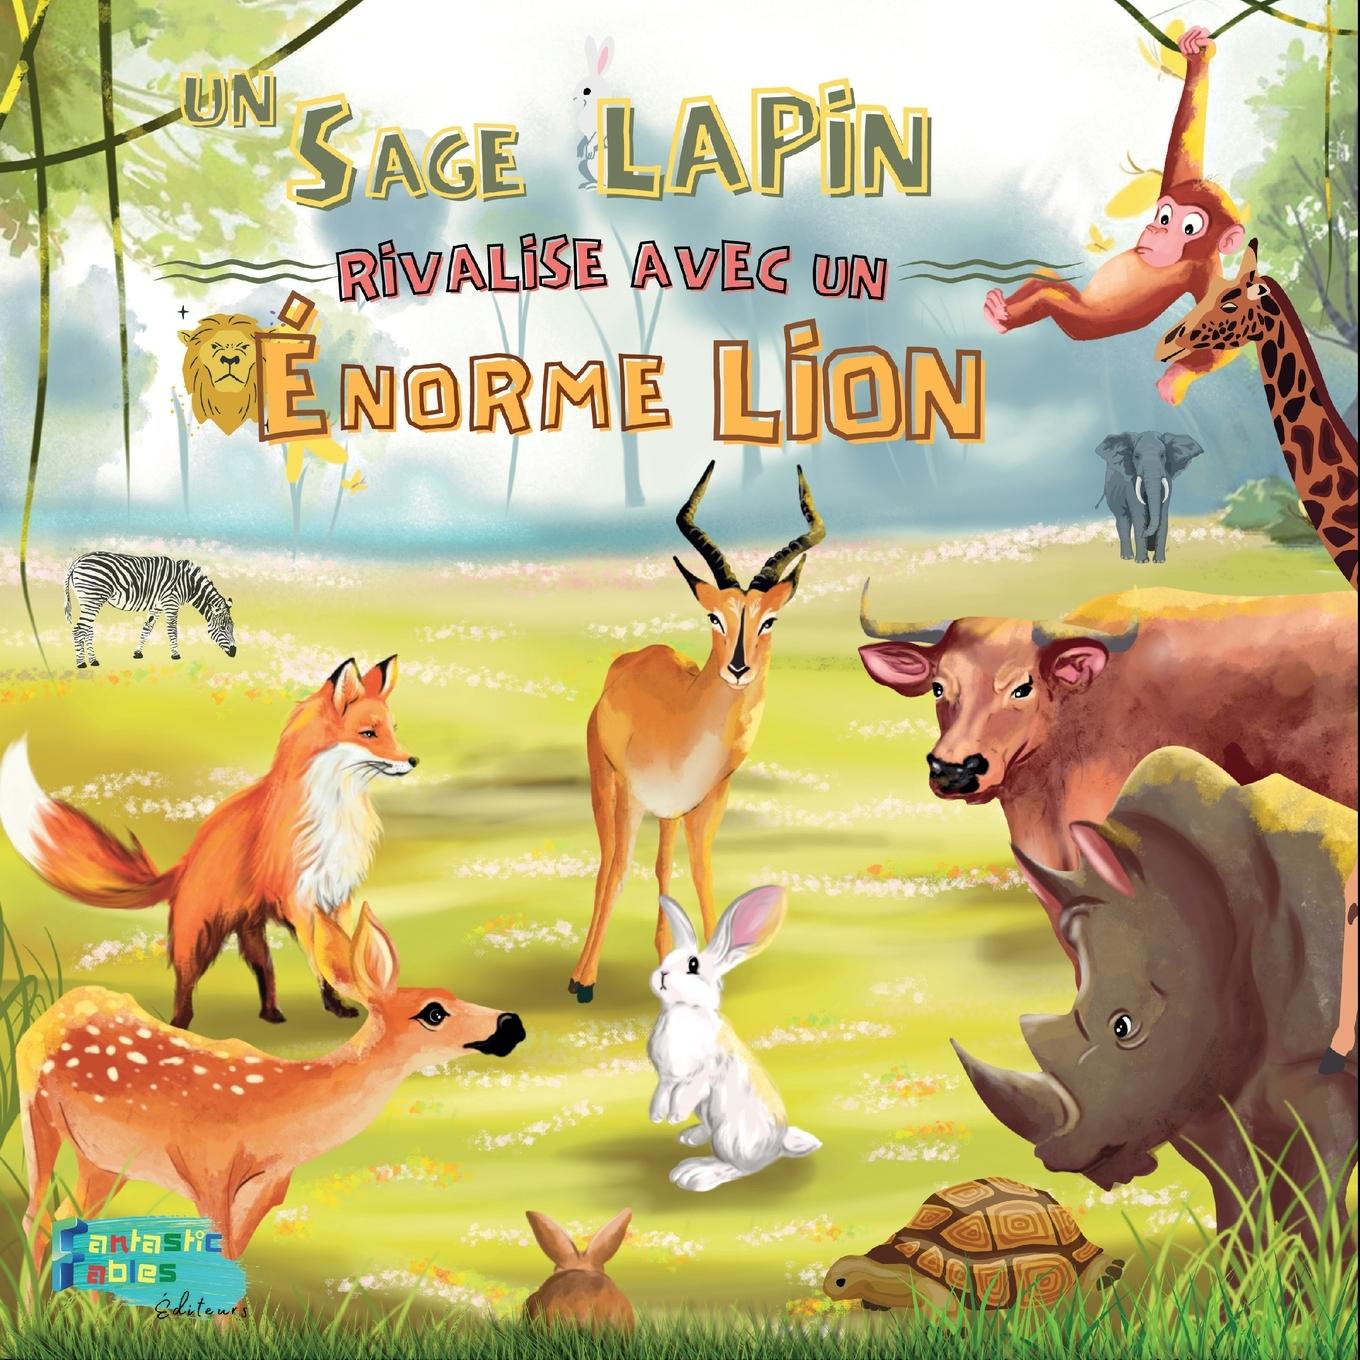 Kniha Sage Lapin rivalise avec un Enorme Lion 